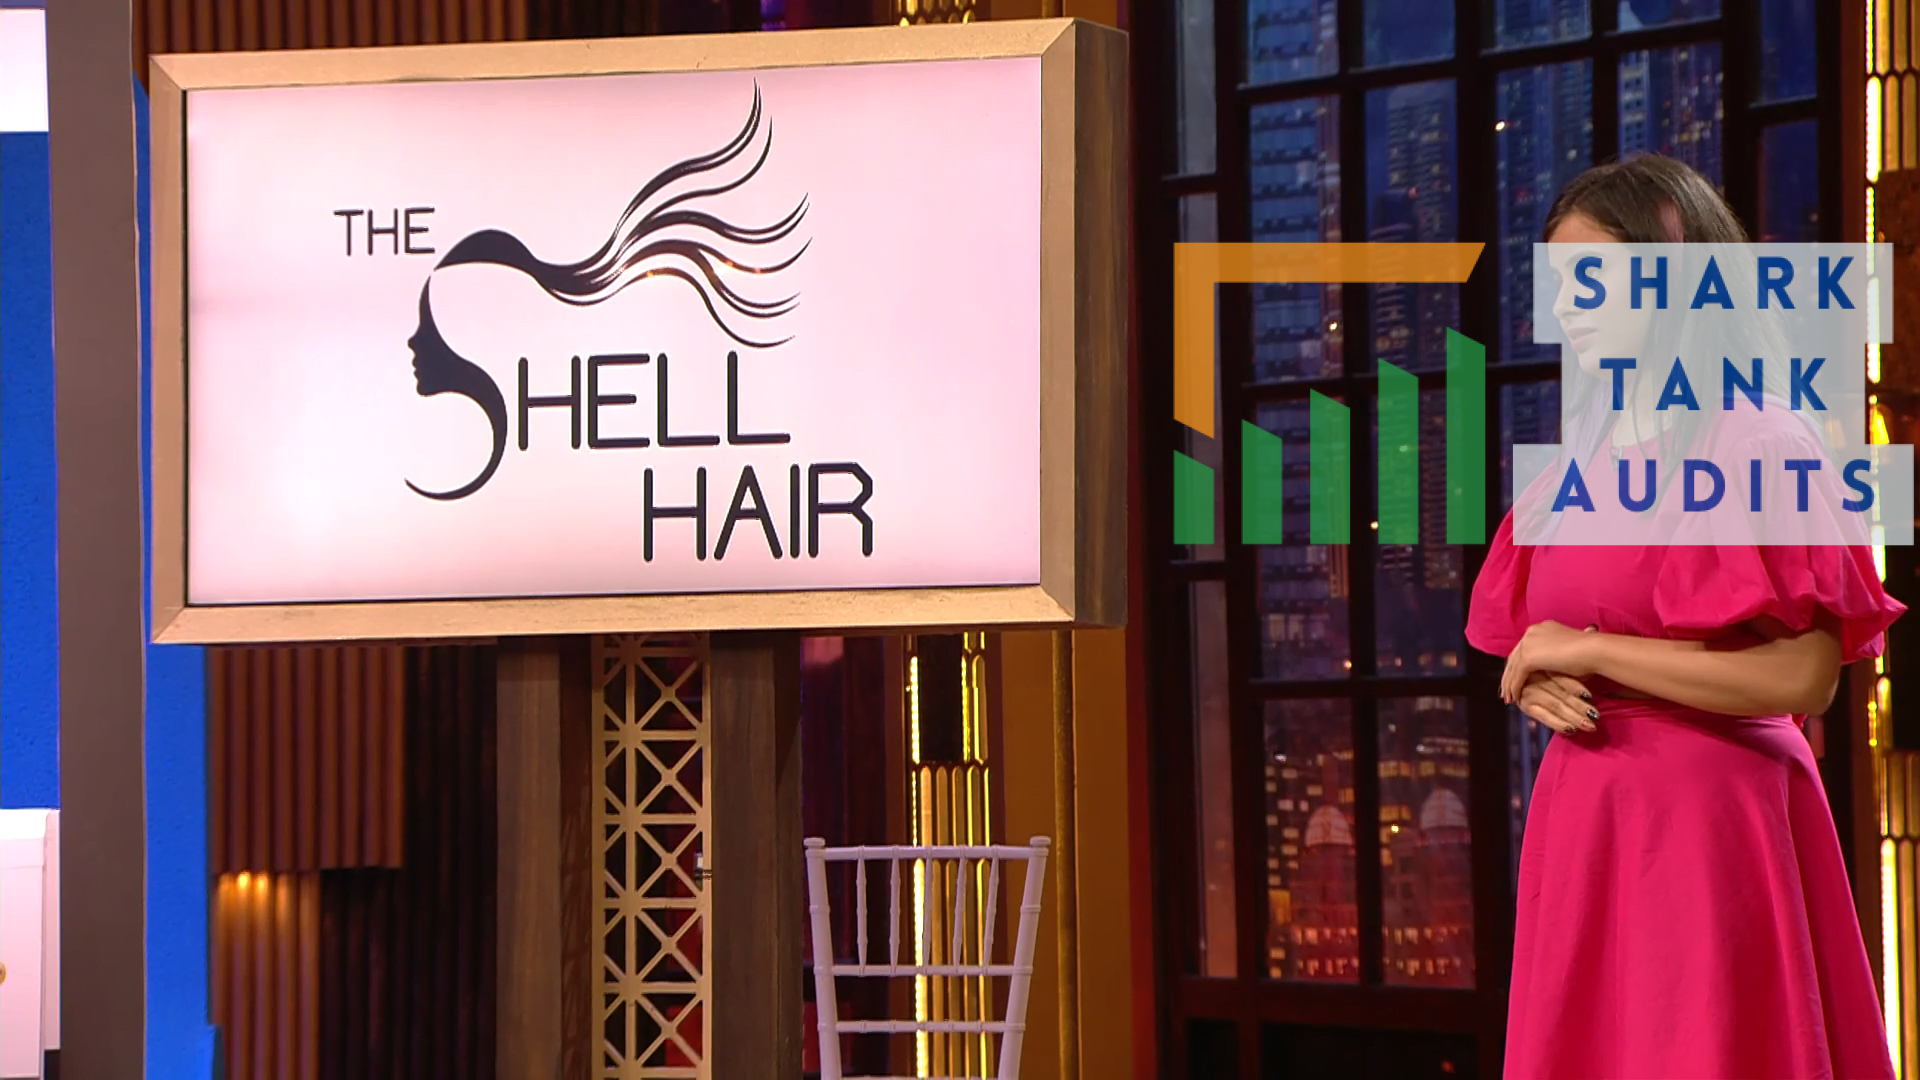 The Shell Hair Shark Tank